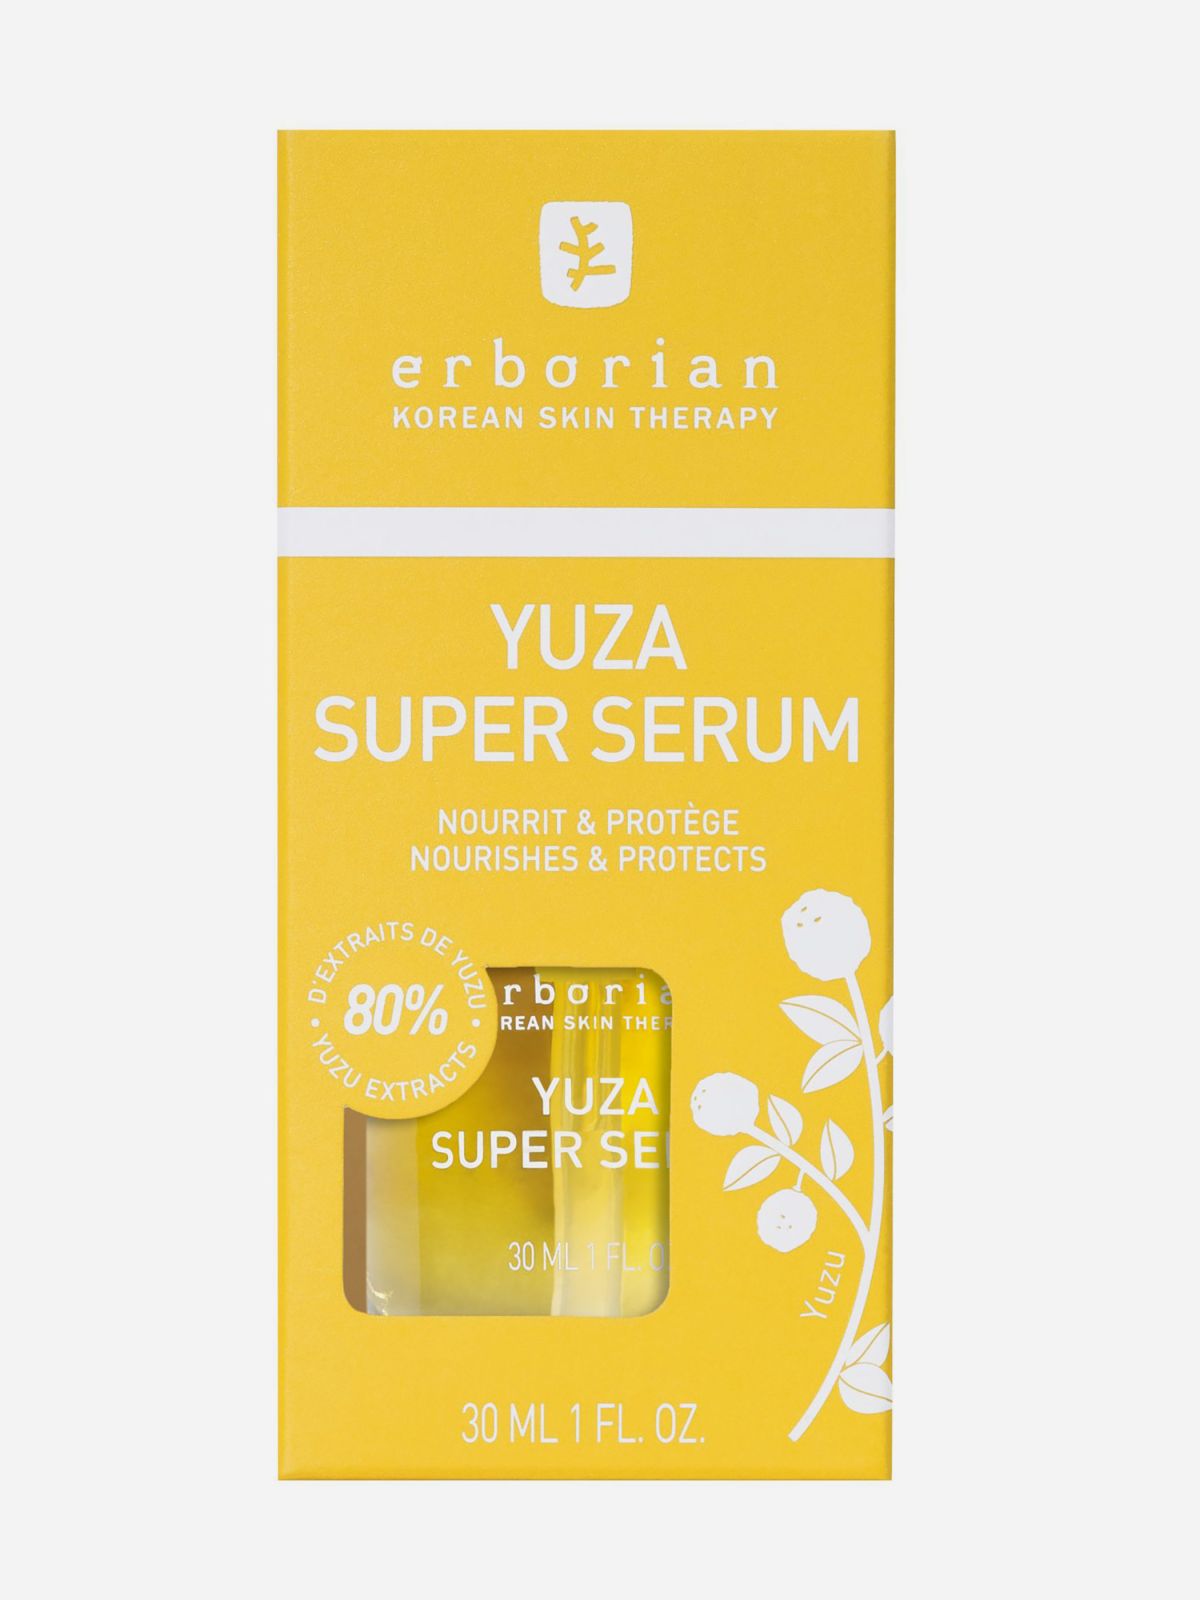  יוזה סופר סרום Yuza Super Serum של ERBORIAN